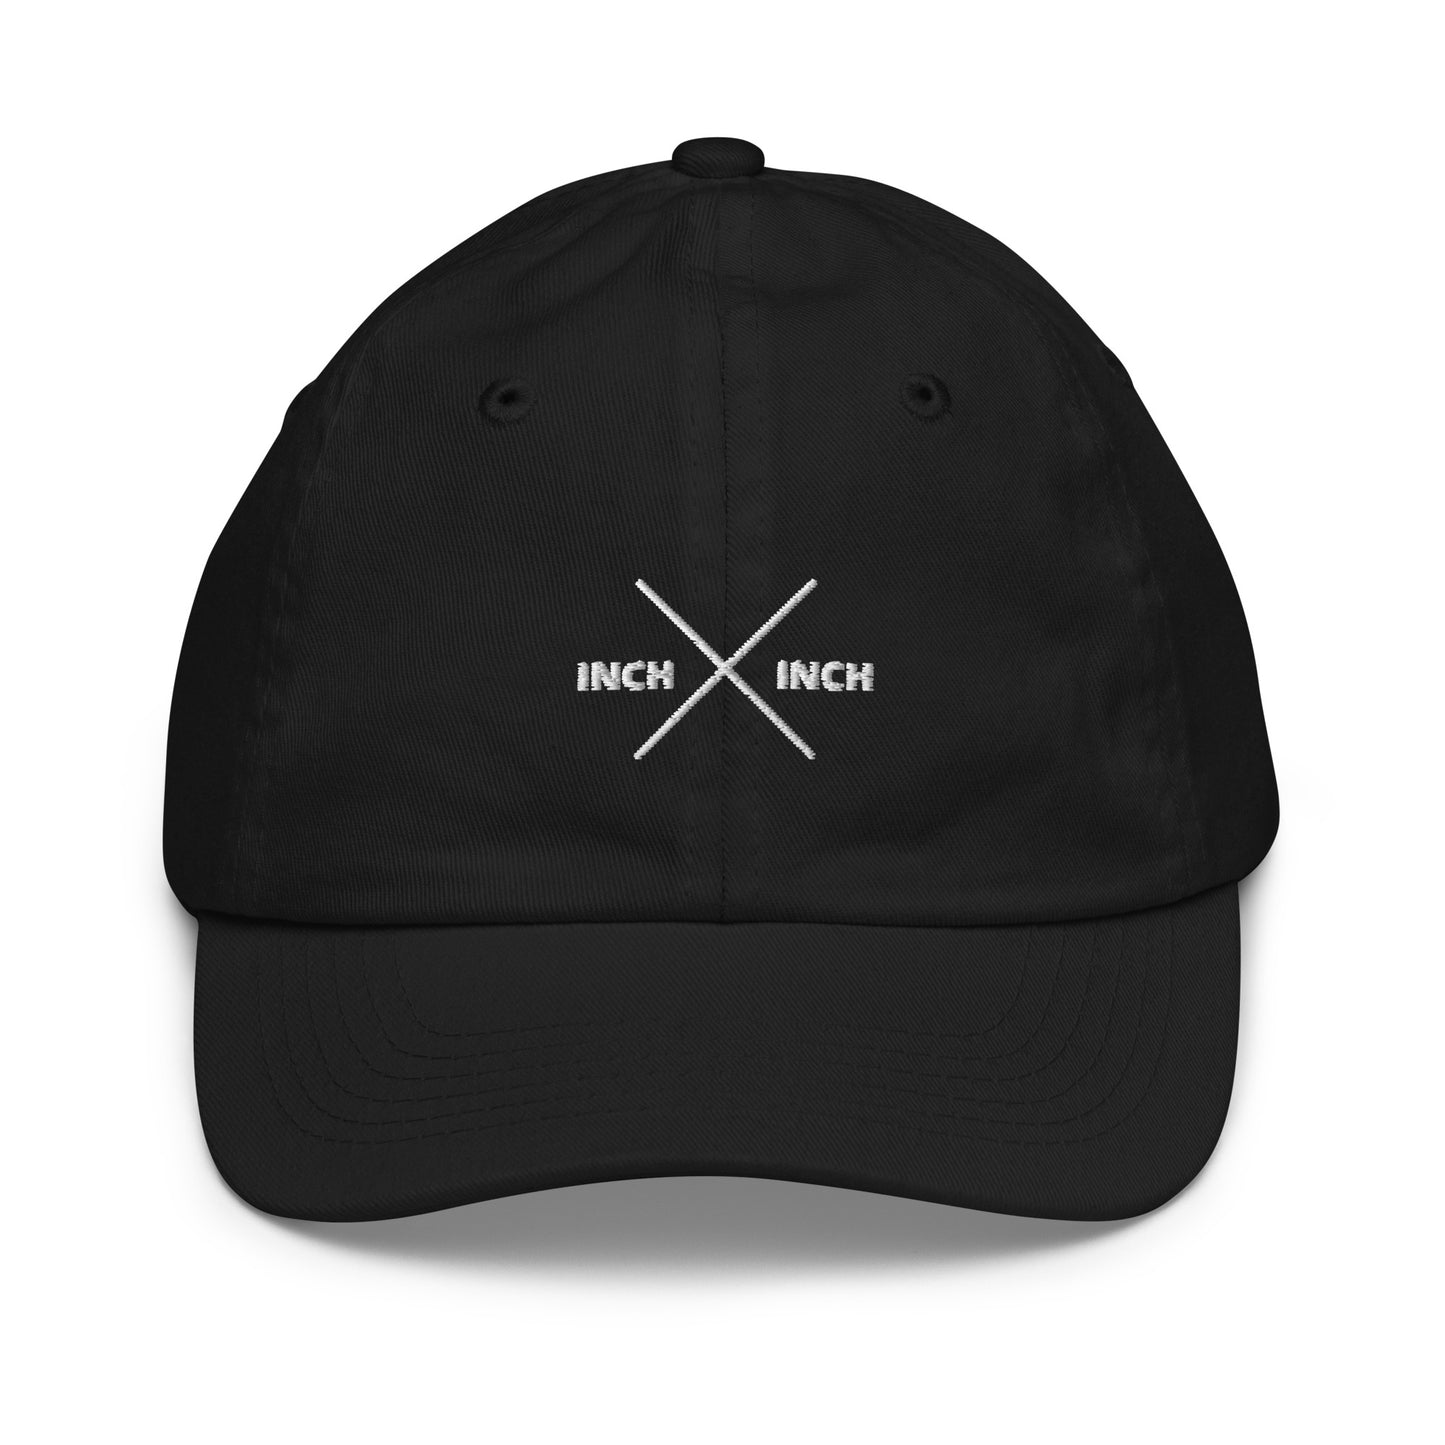 Inch X Inch Kids Cap